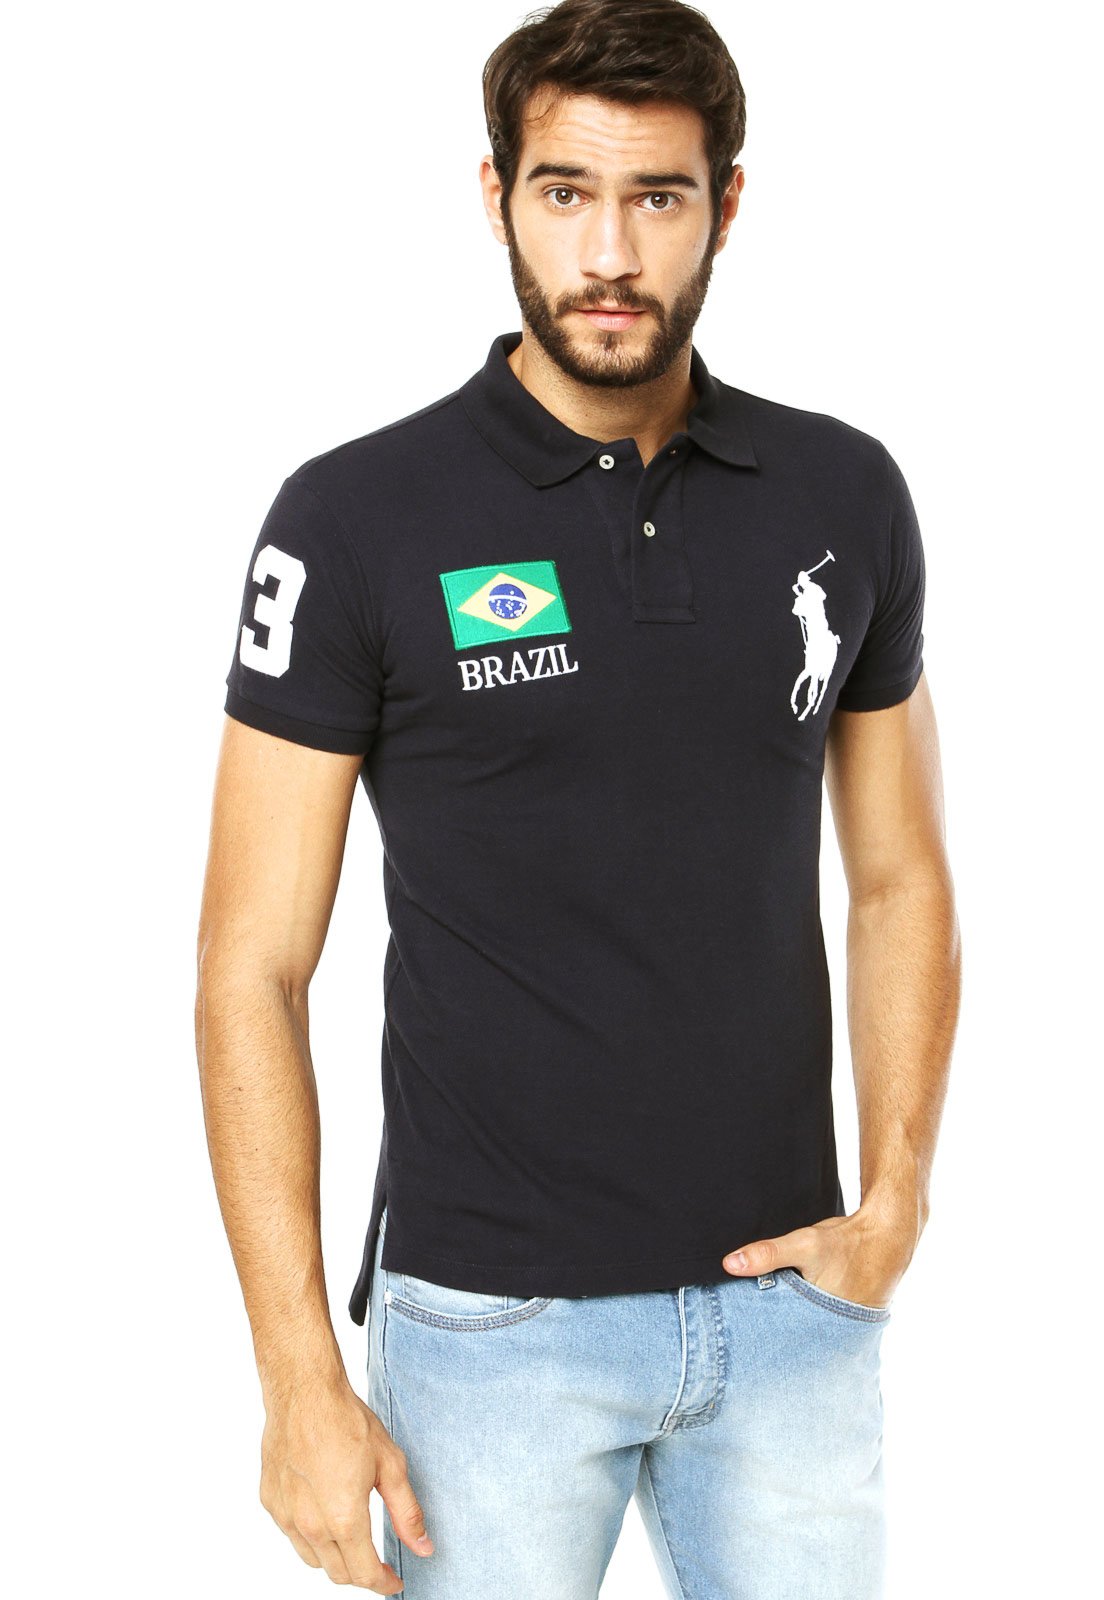 Polo Ralph Lauren: Compre no Brasil com até 60% OFF